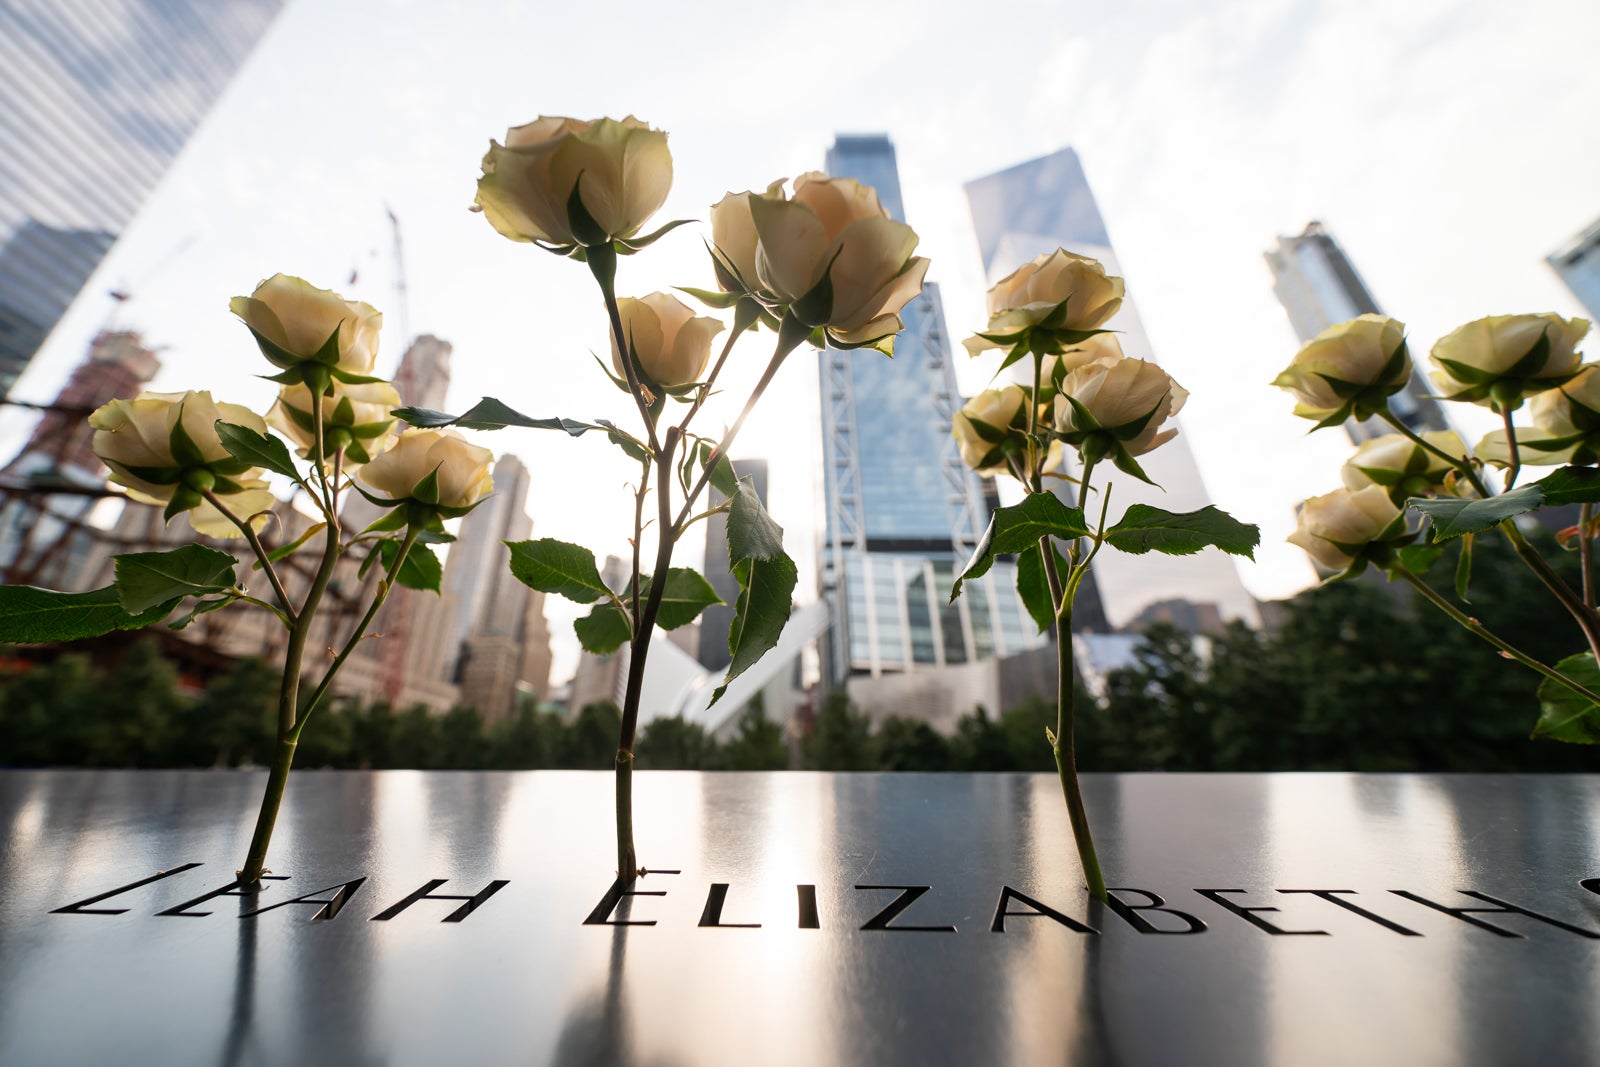 20 Anniversary 911 Memorial_2020 Sept 11 Anniversary_17